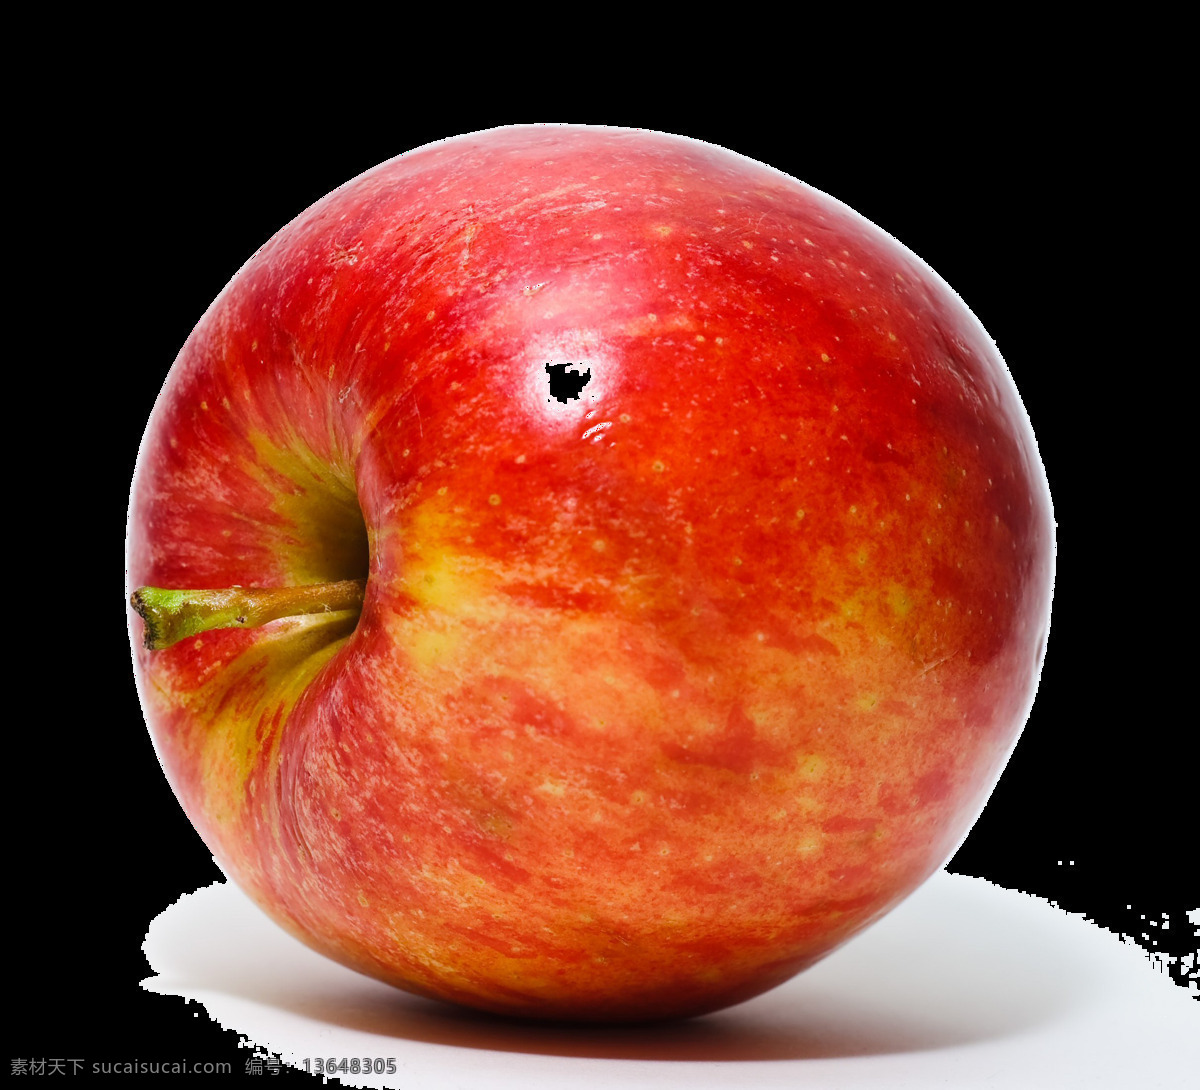 真实 苹果 免 抠 透明 图 层 青苹果 苹果卡通图片 苹果logo 苹果简笔画 壁纸高清 大苹果 红苹果 苹果梨树 苹果商标 金毛苹果 青苹果榨汁